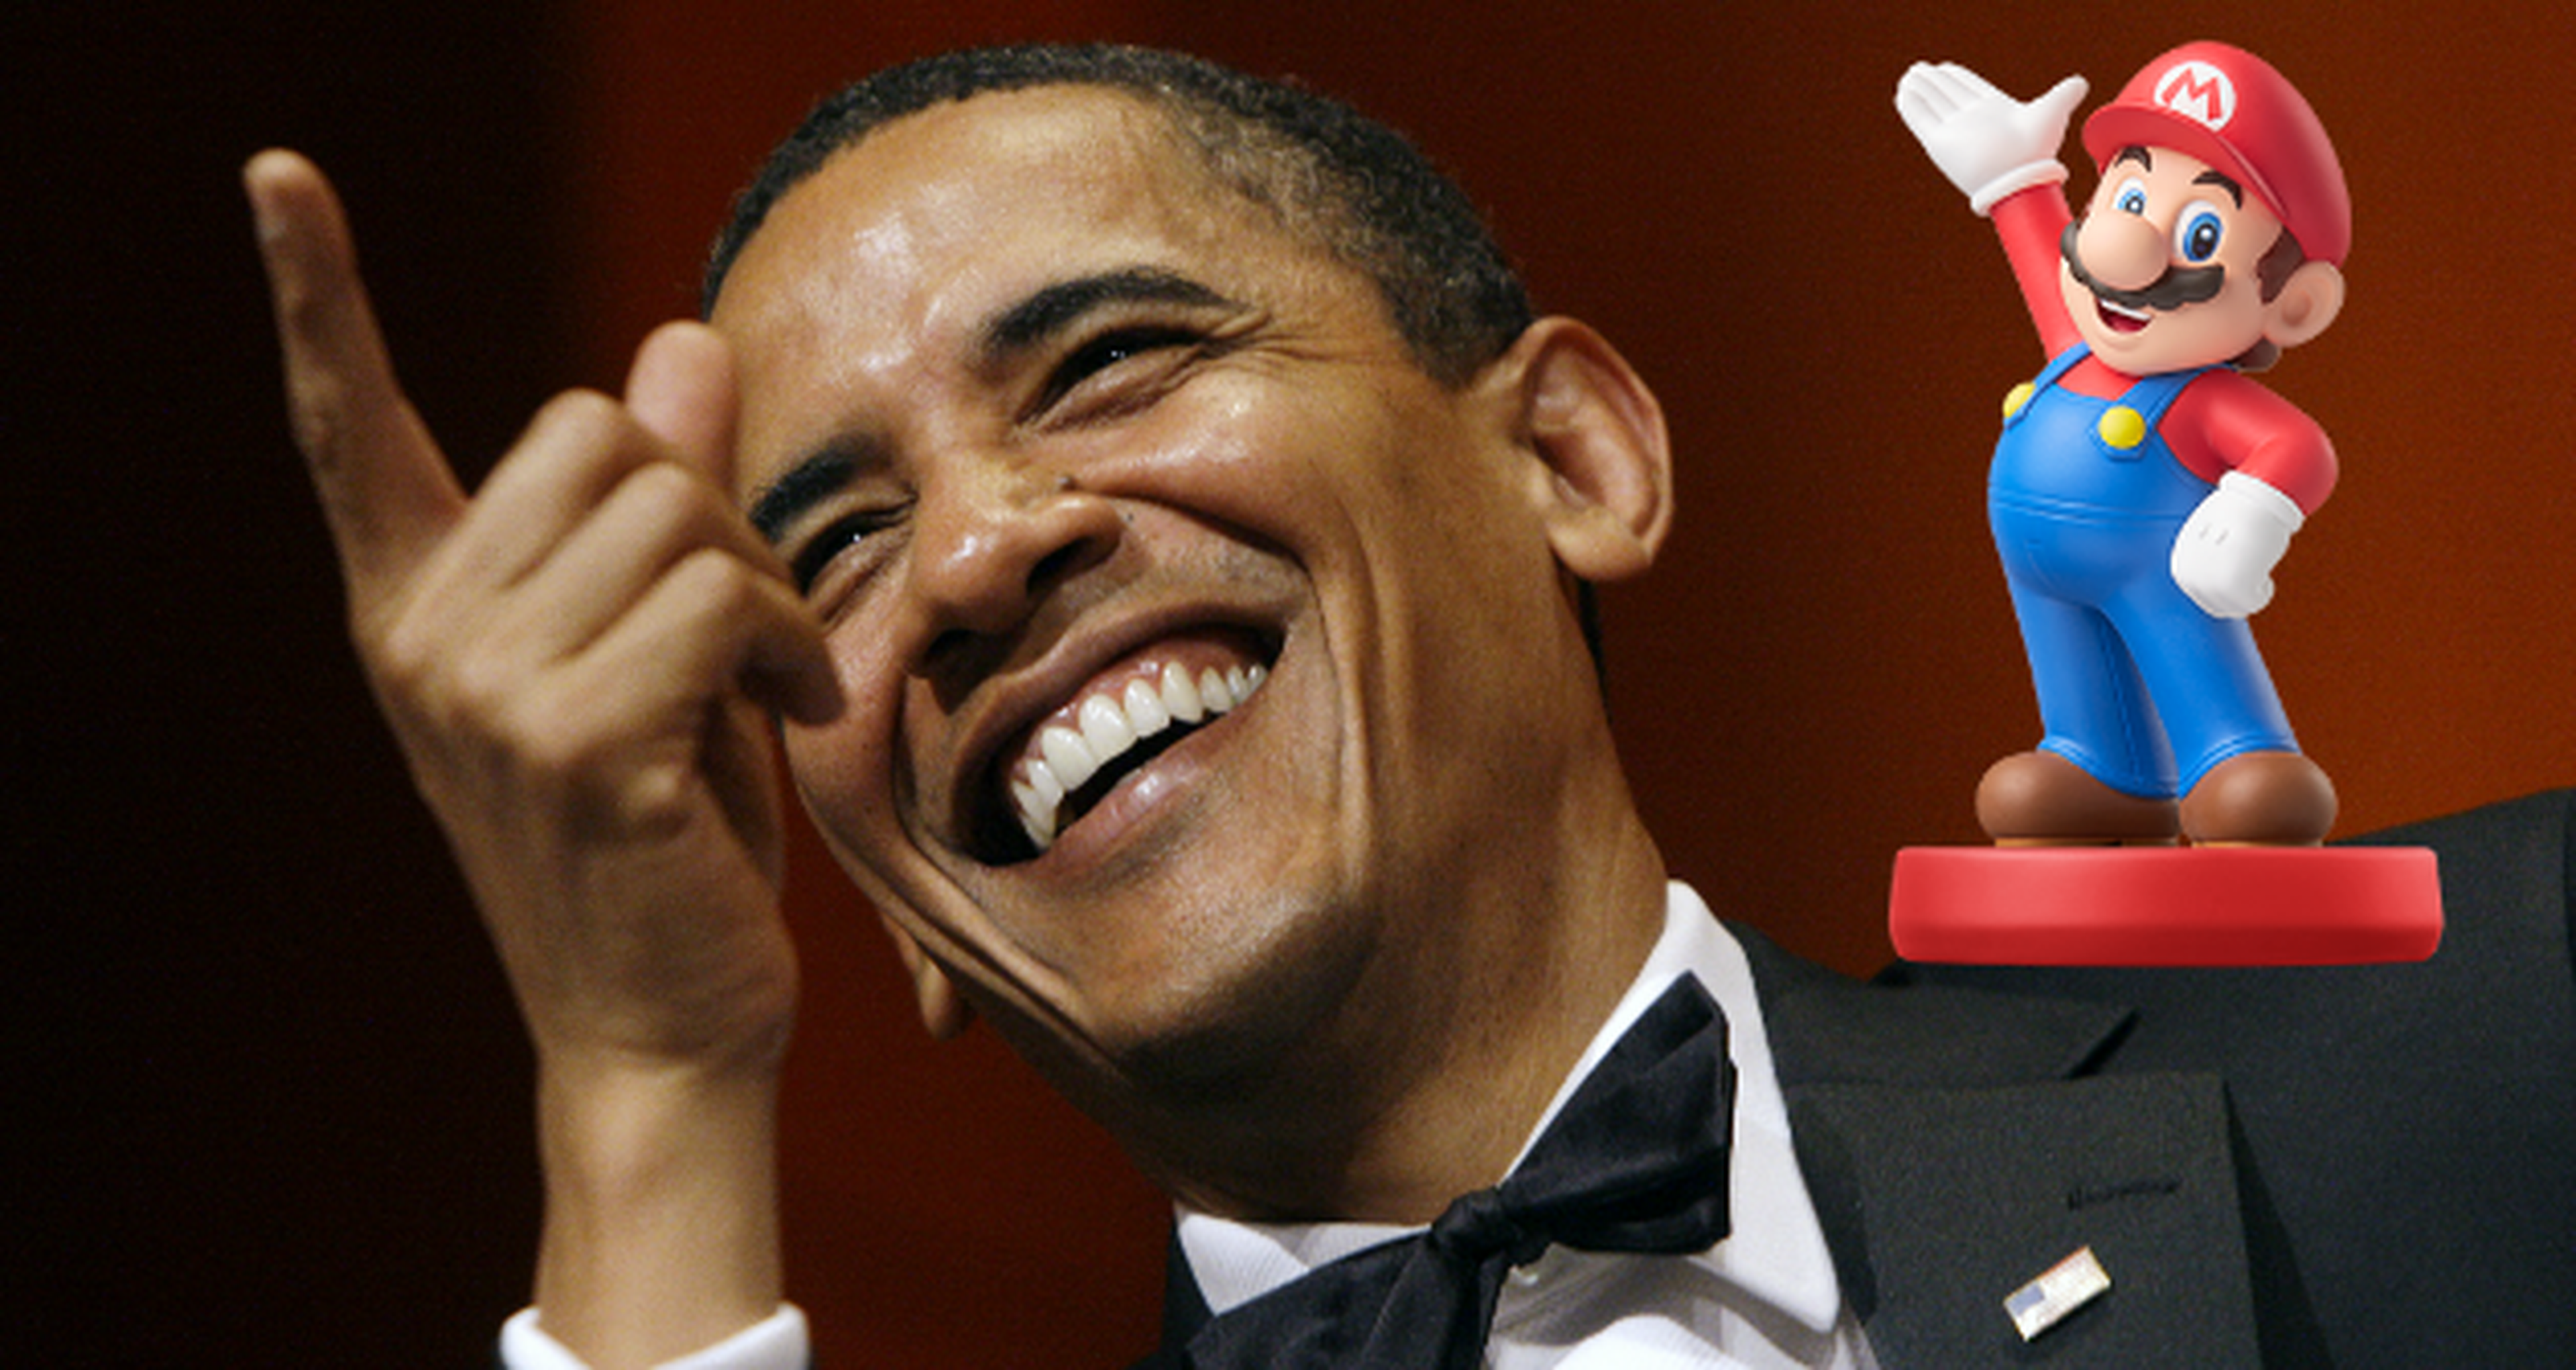 ¿Colecciona Barack Obama figuras Amiibo?